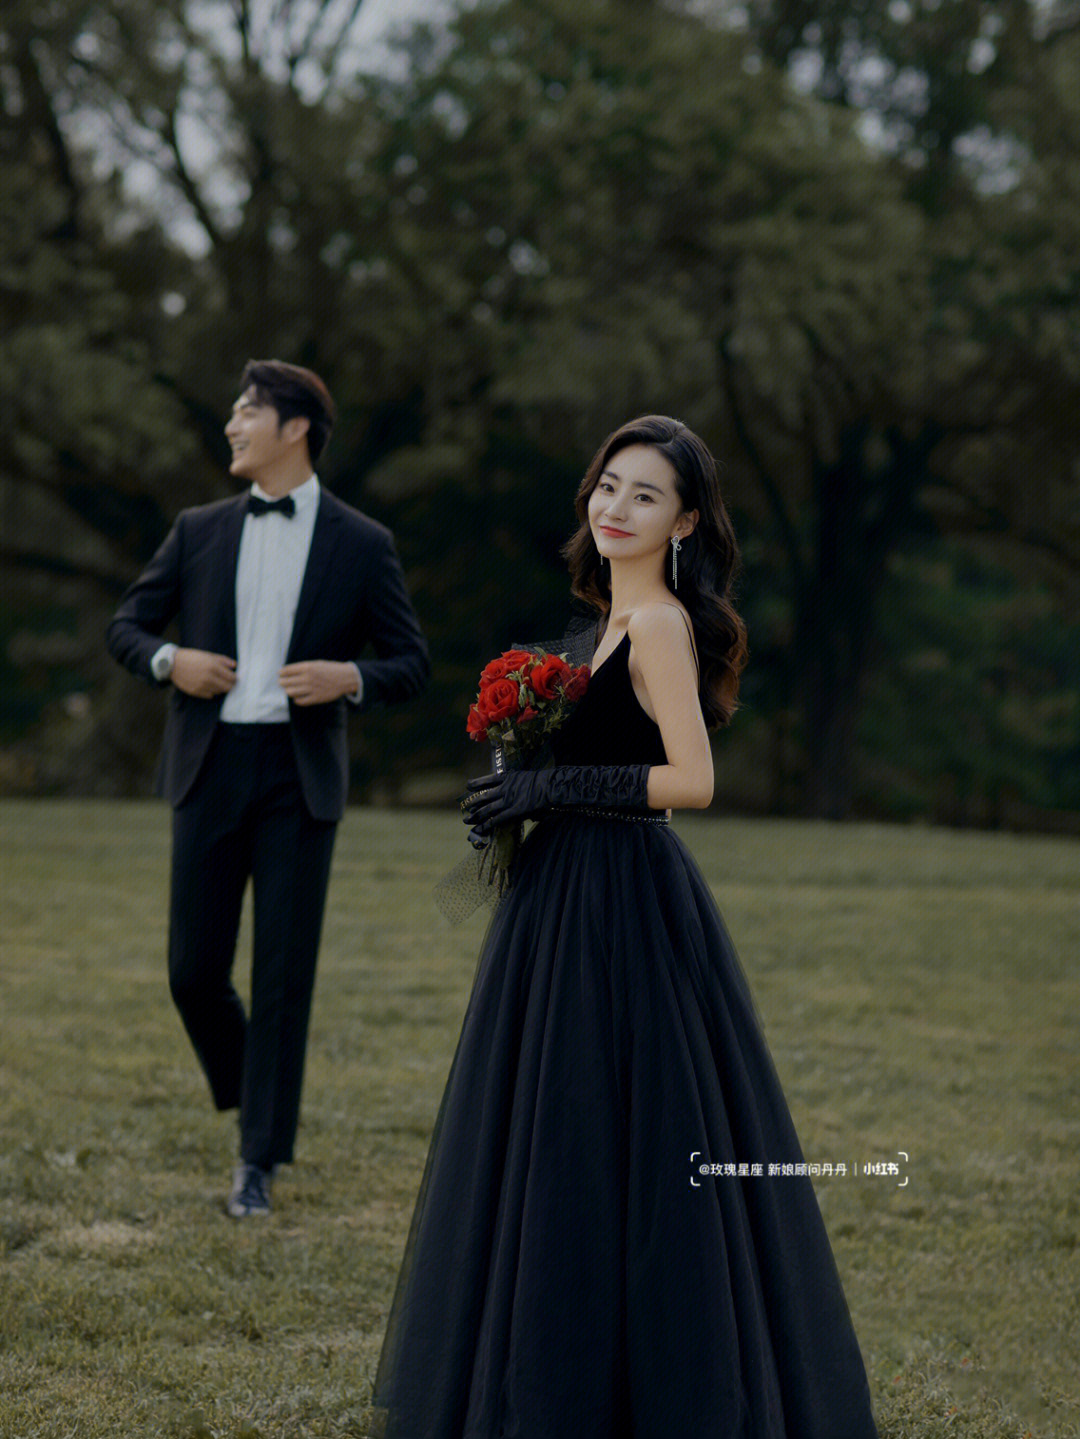 黑色婚纱代表至死不渝的爱08北京婚纱照